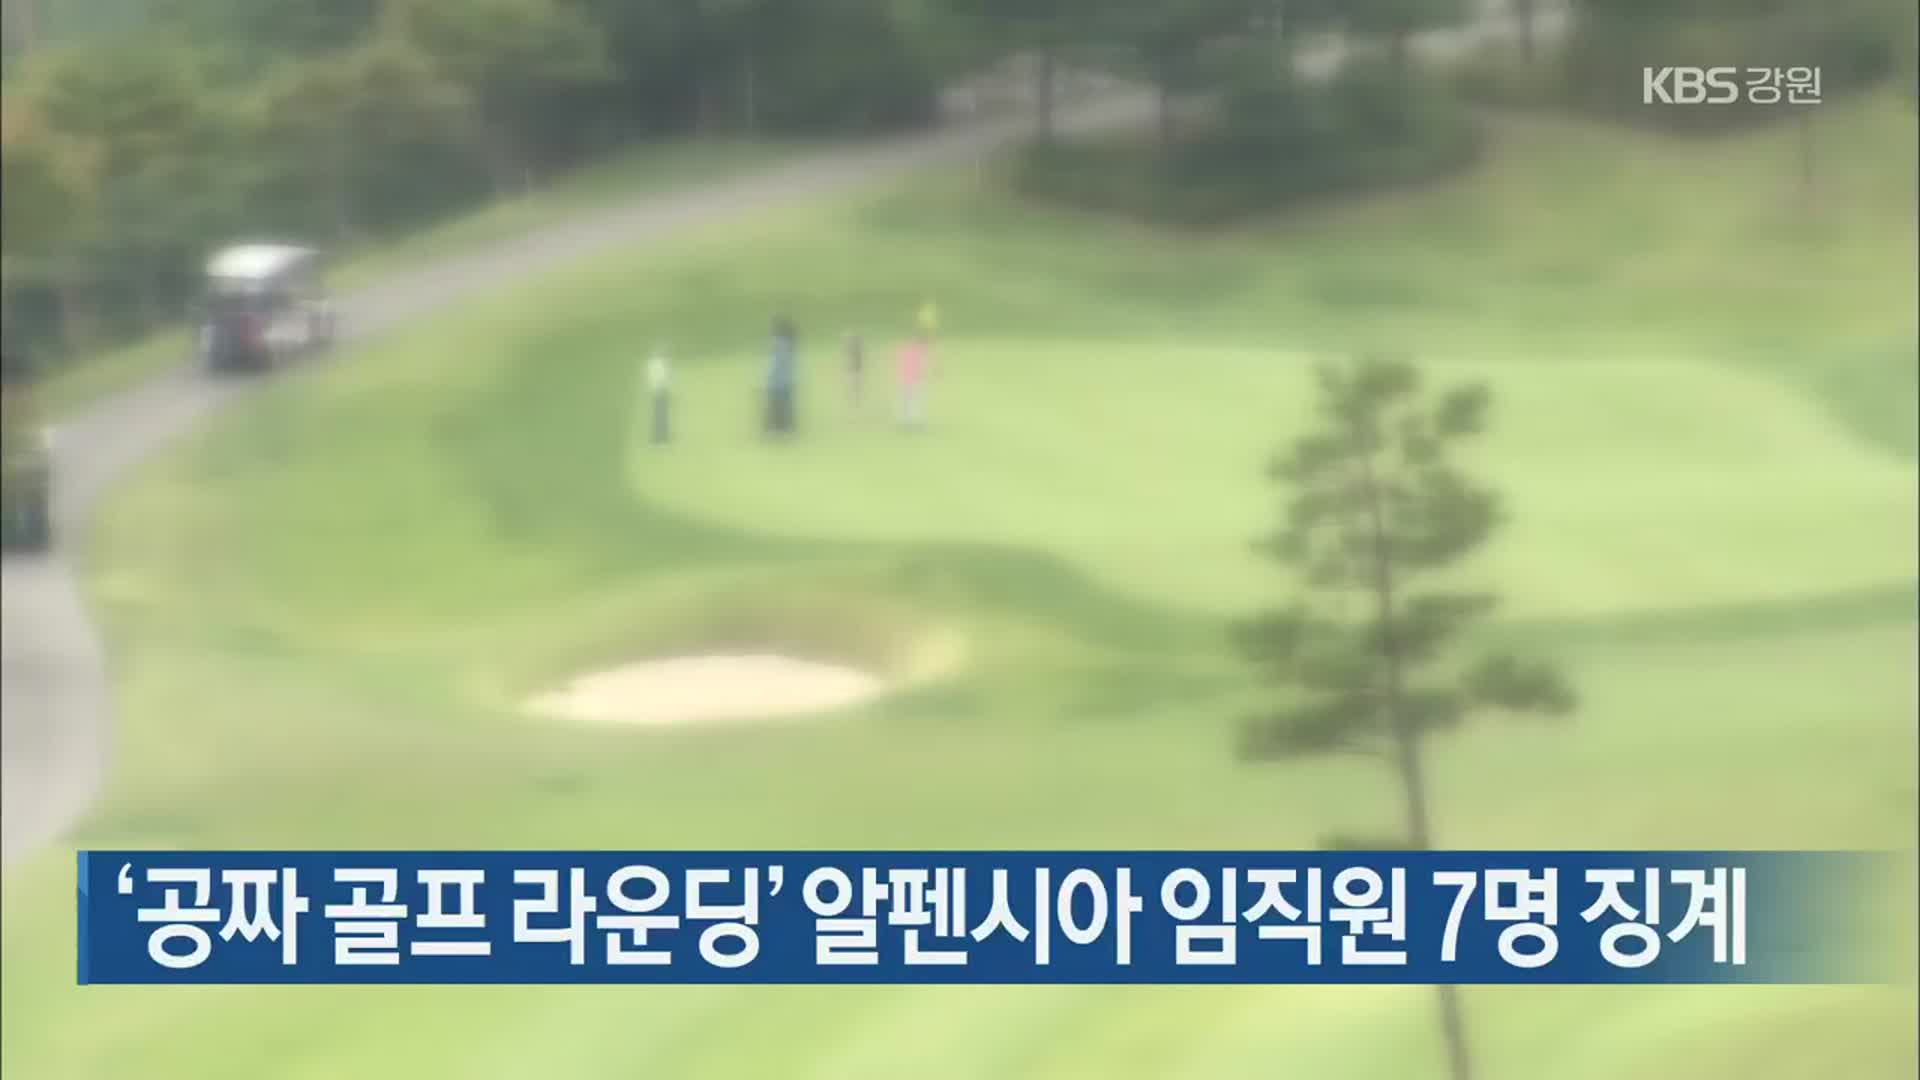 ‘공짜 골프 라운딩’ 알펜시아 임직원 7명 징계